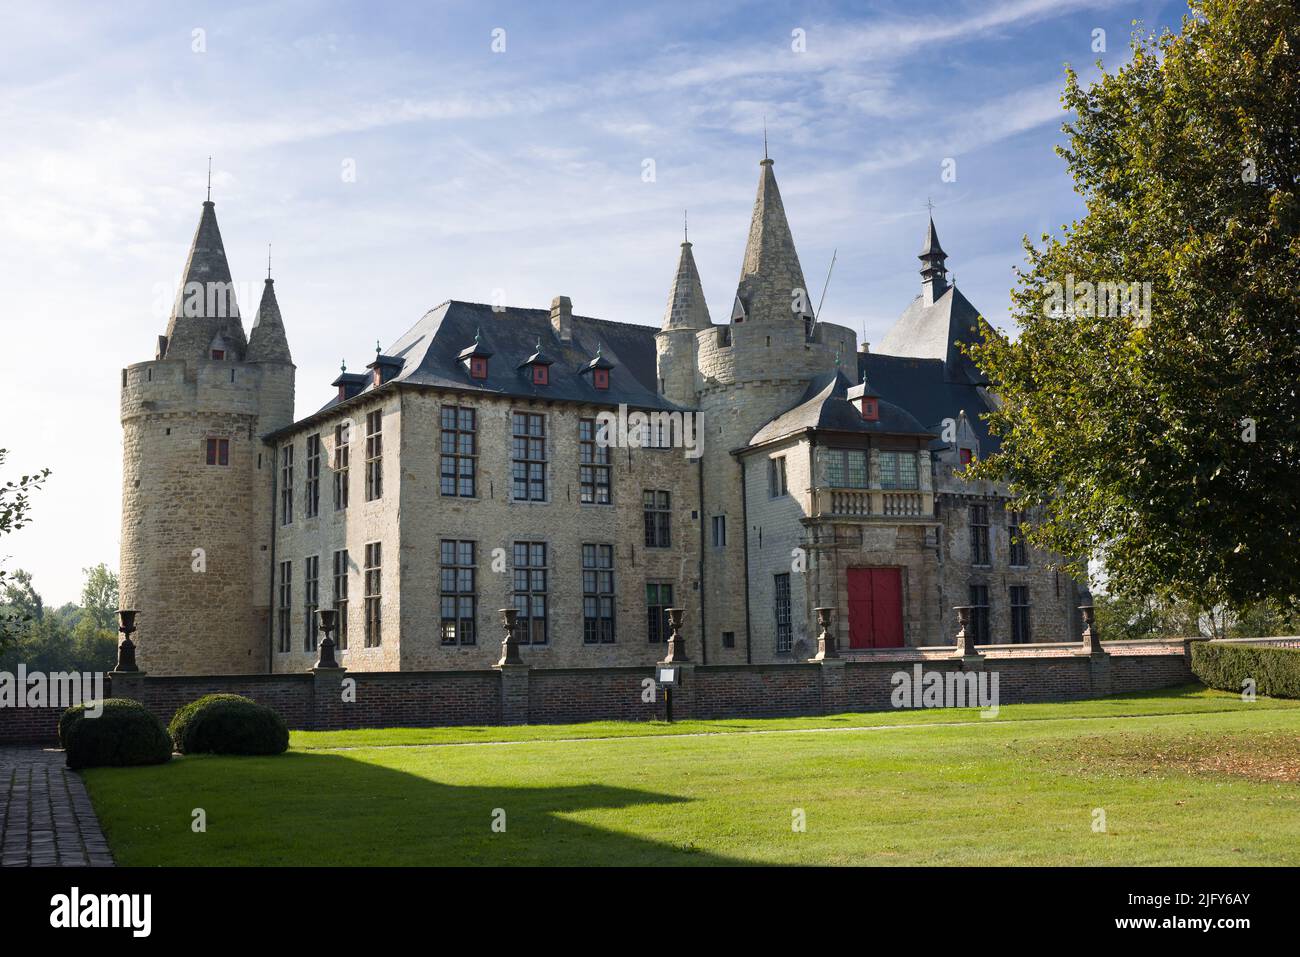 Vue extérieure sur un château médiéval de 14th ans dans la région flamande de Belgique Banque D'Images